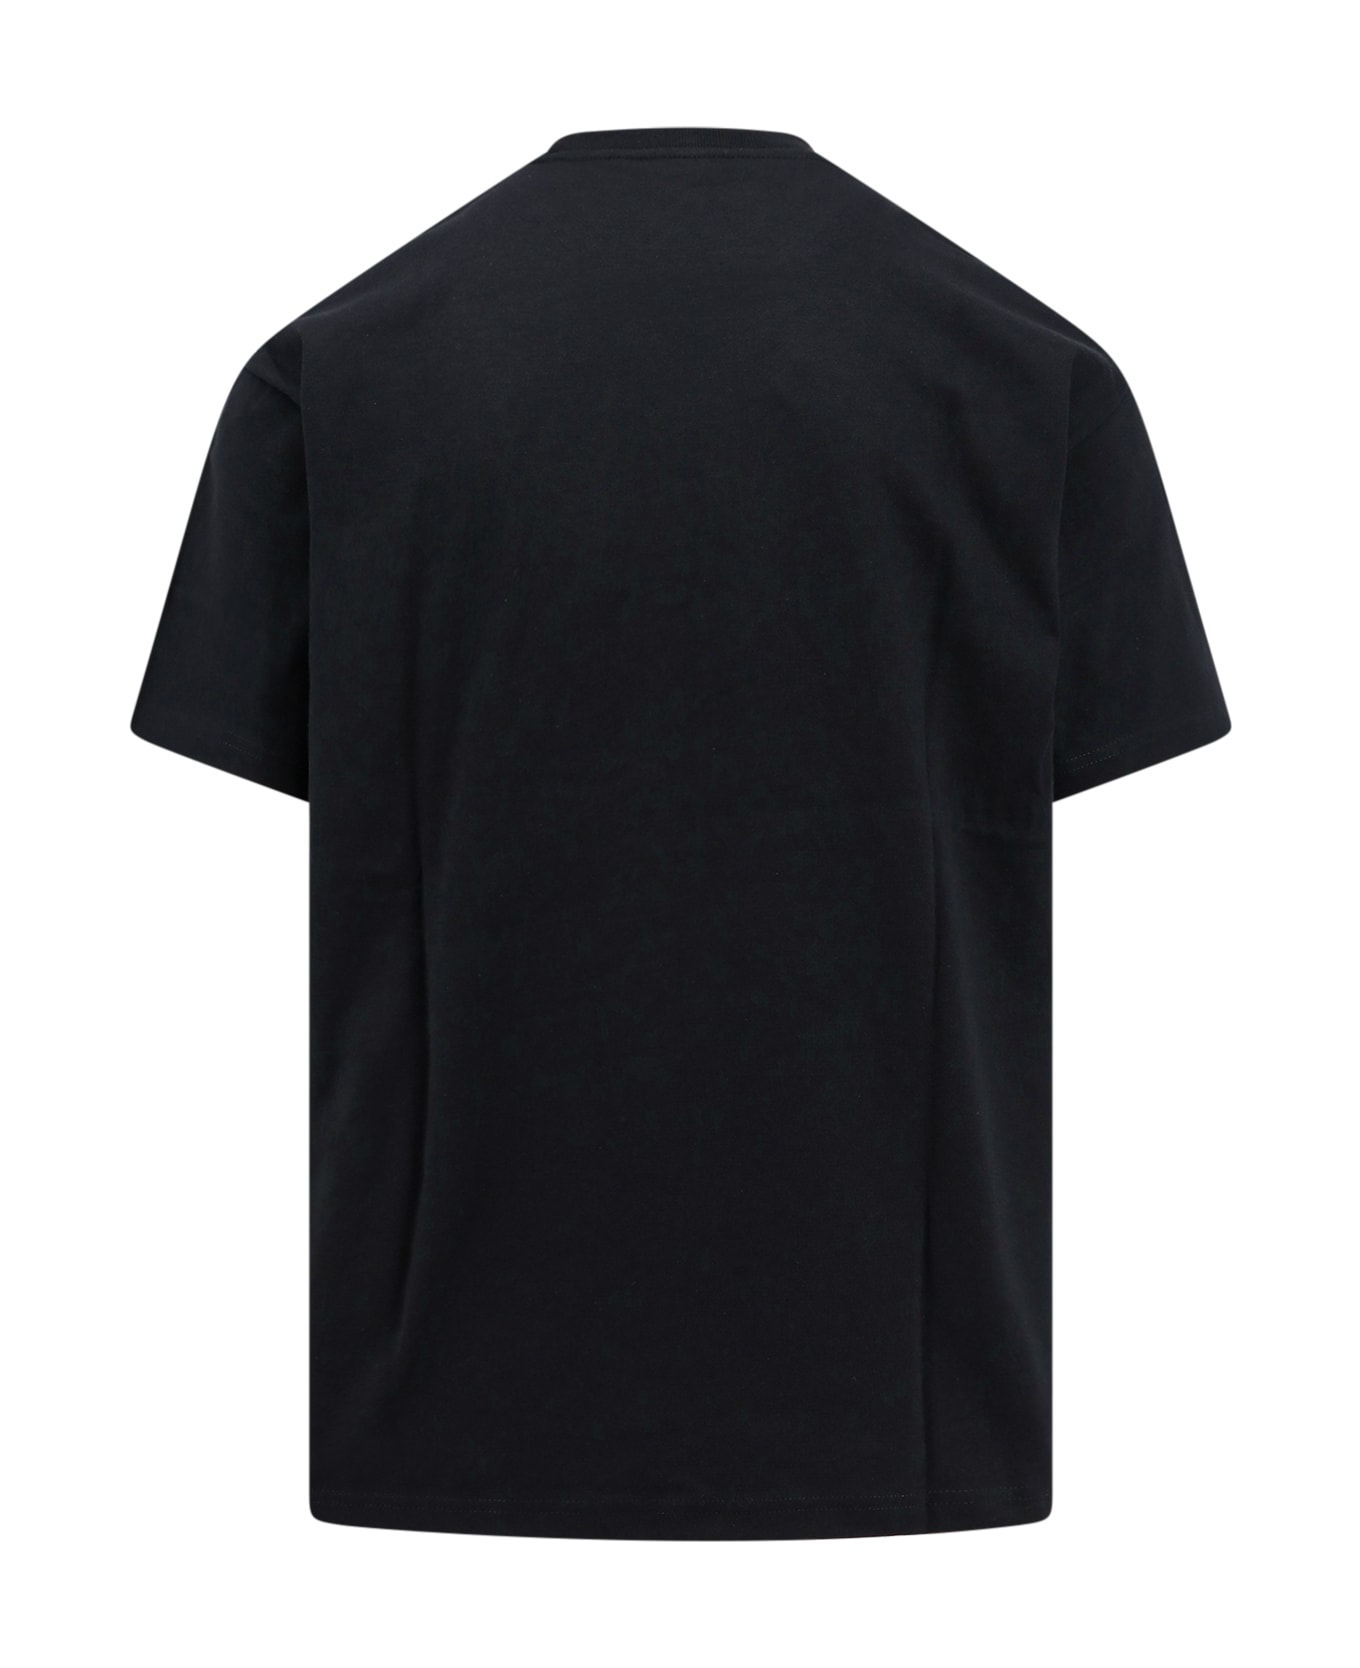 Carhartt T-shirt - Nero